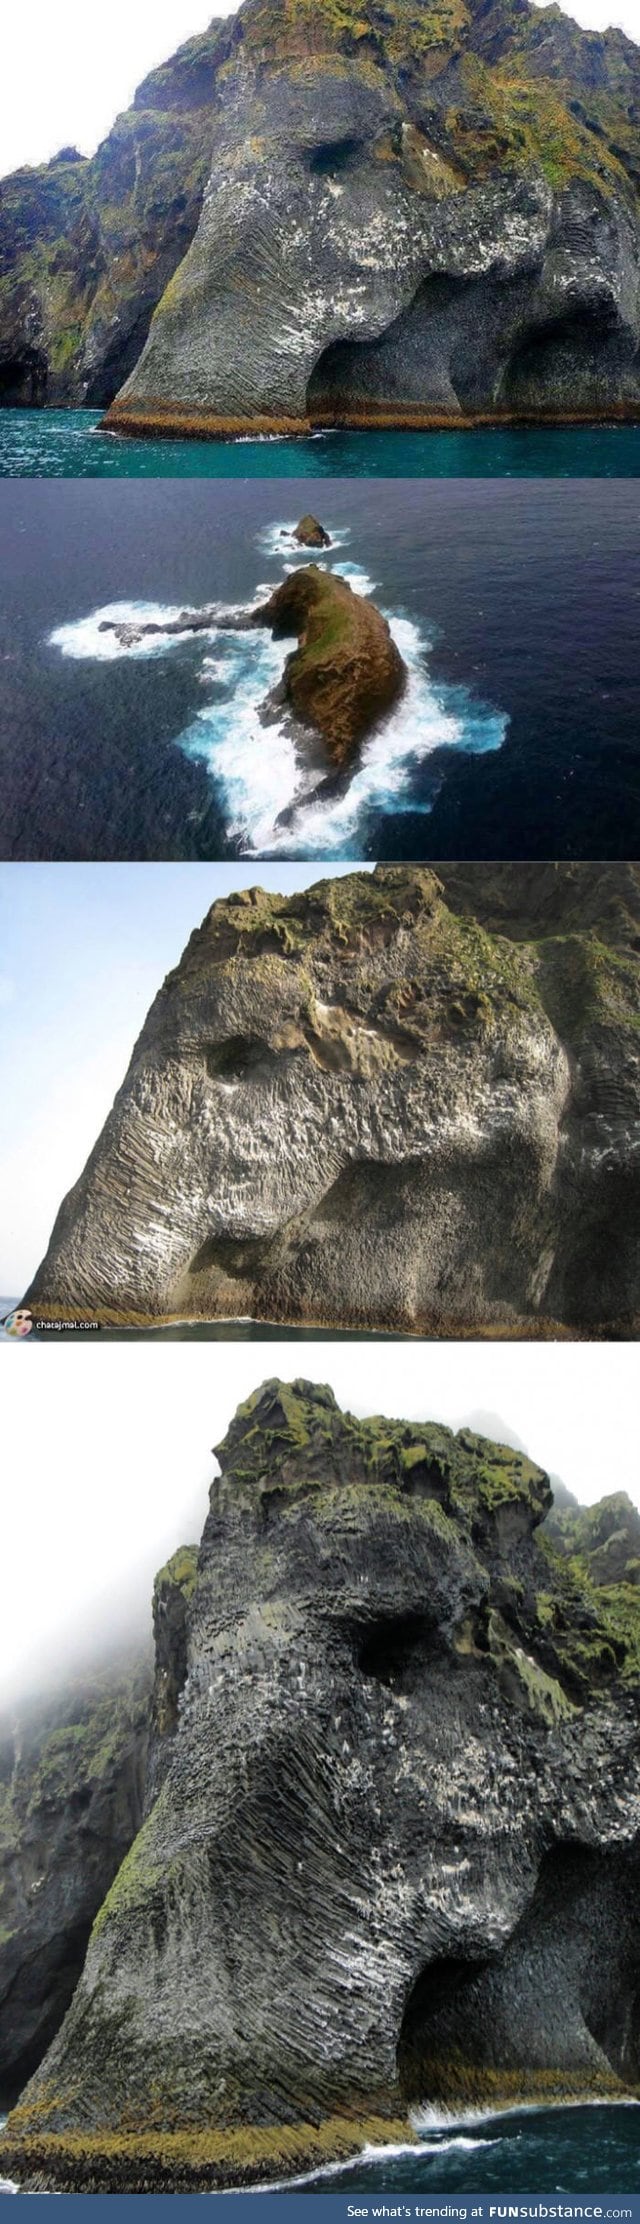 Elephant Rock in Heimaey, Iceland